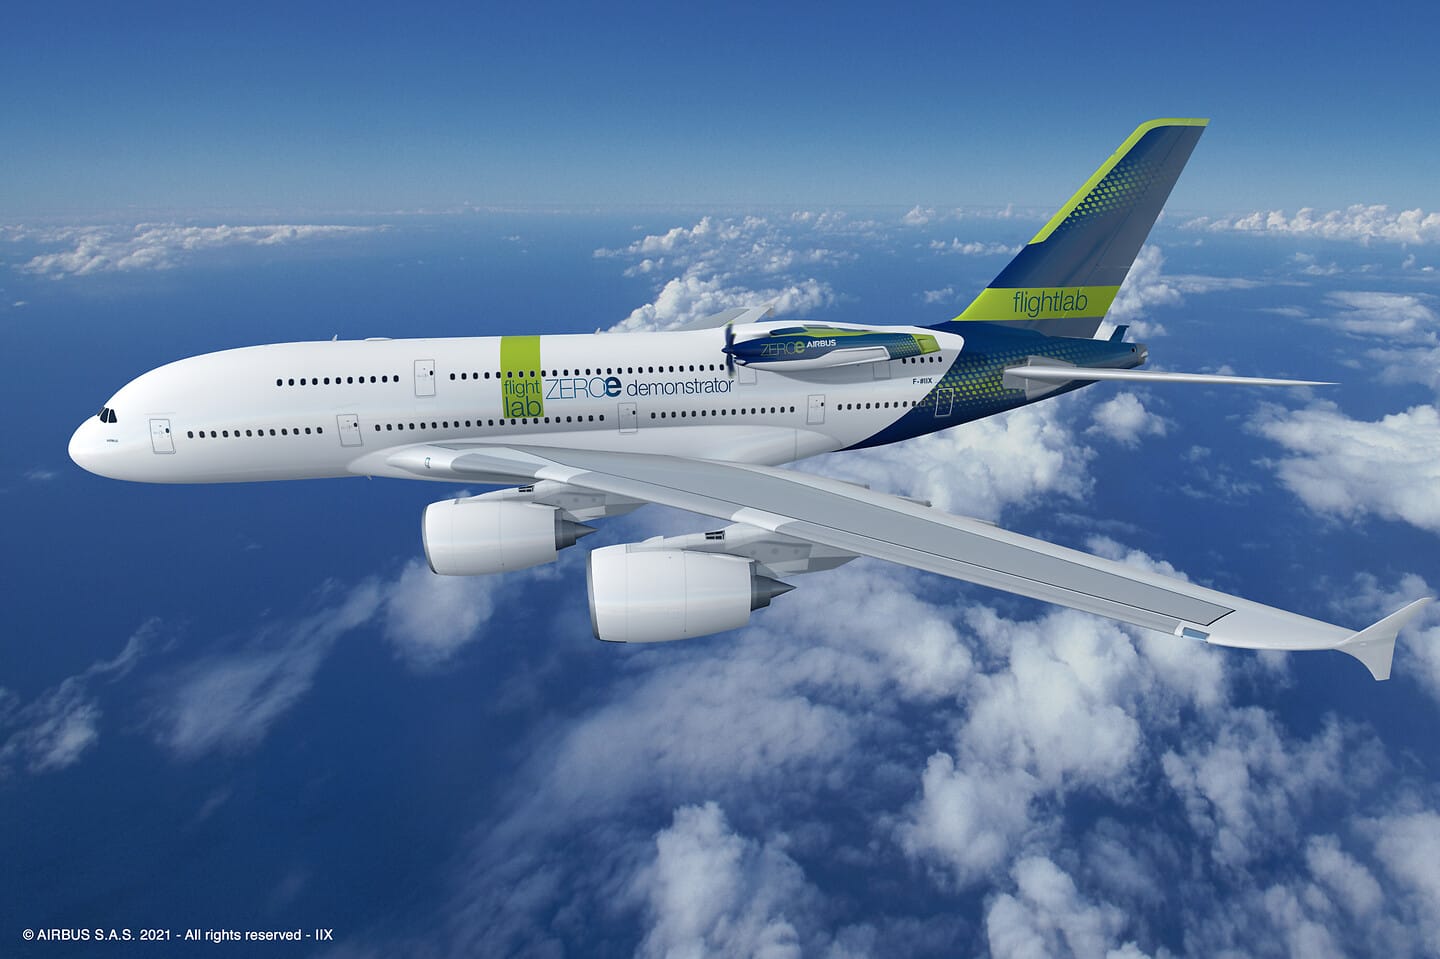 Airbus projeta que seus aviões voarão com hidrogênio líquido em 2035